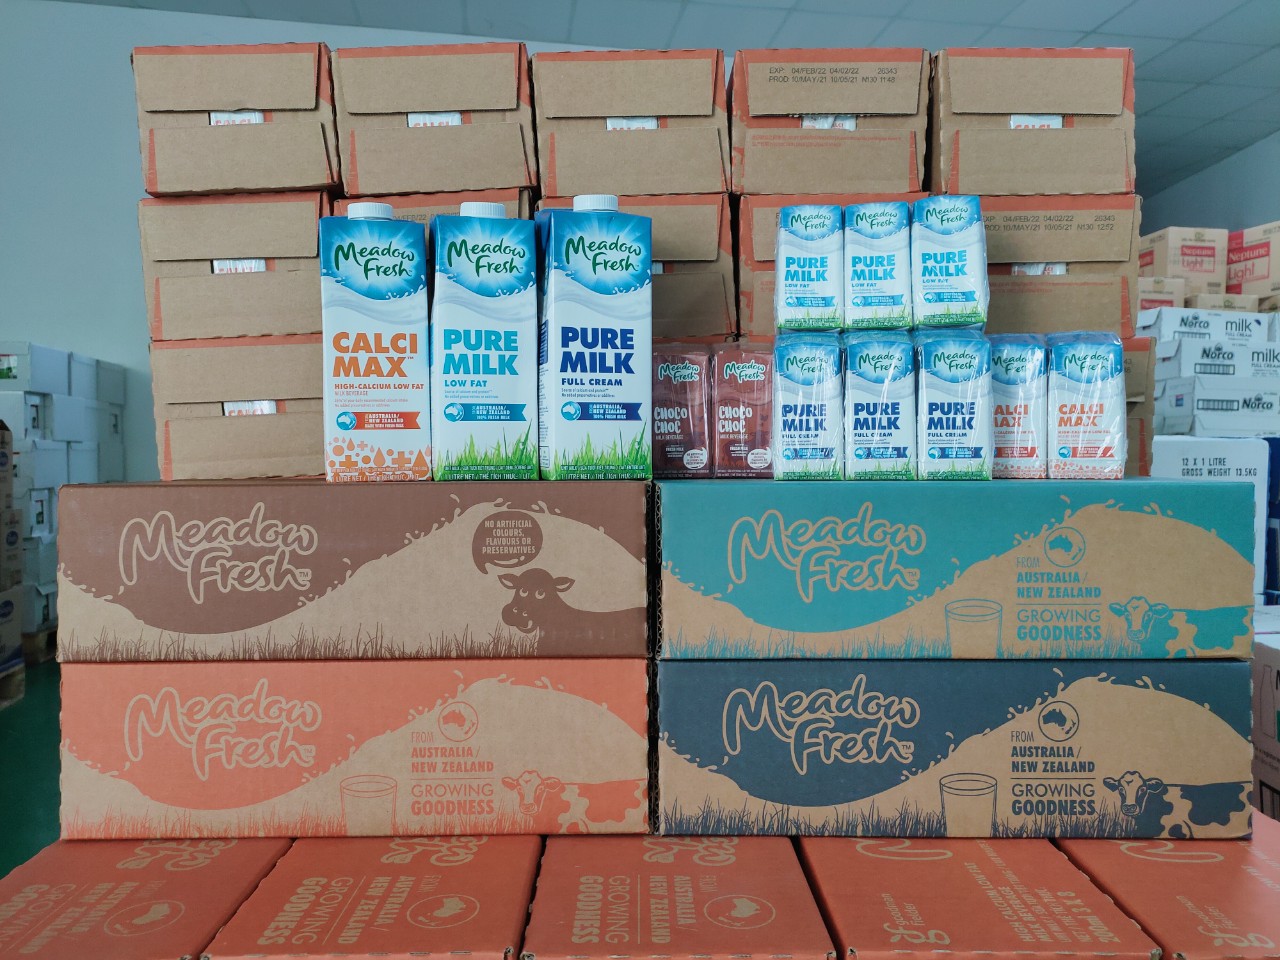 Milkman - siêu thị sữa Meadow Fresh chính hãng giá tốt tại TPHCM 